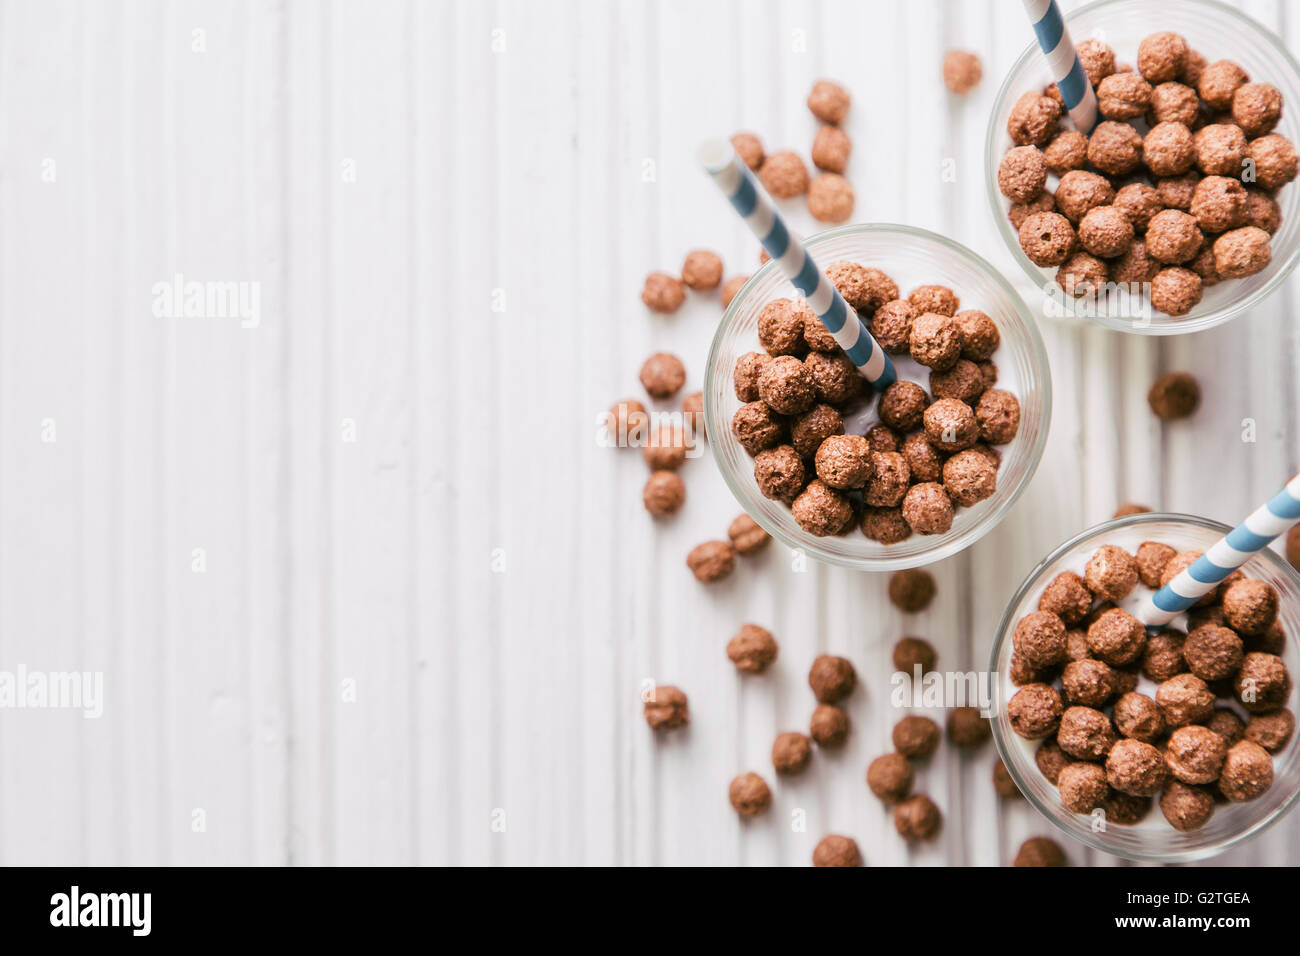 Las bolas de cereales de chocolate con leche y pajas Foto de stock